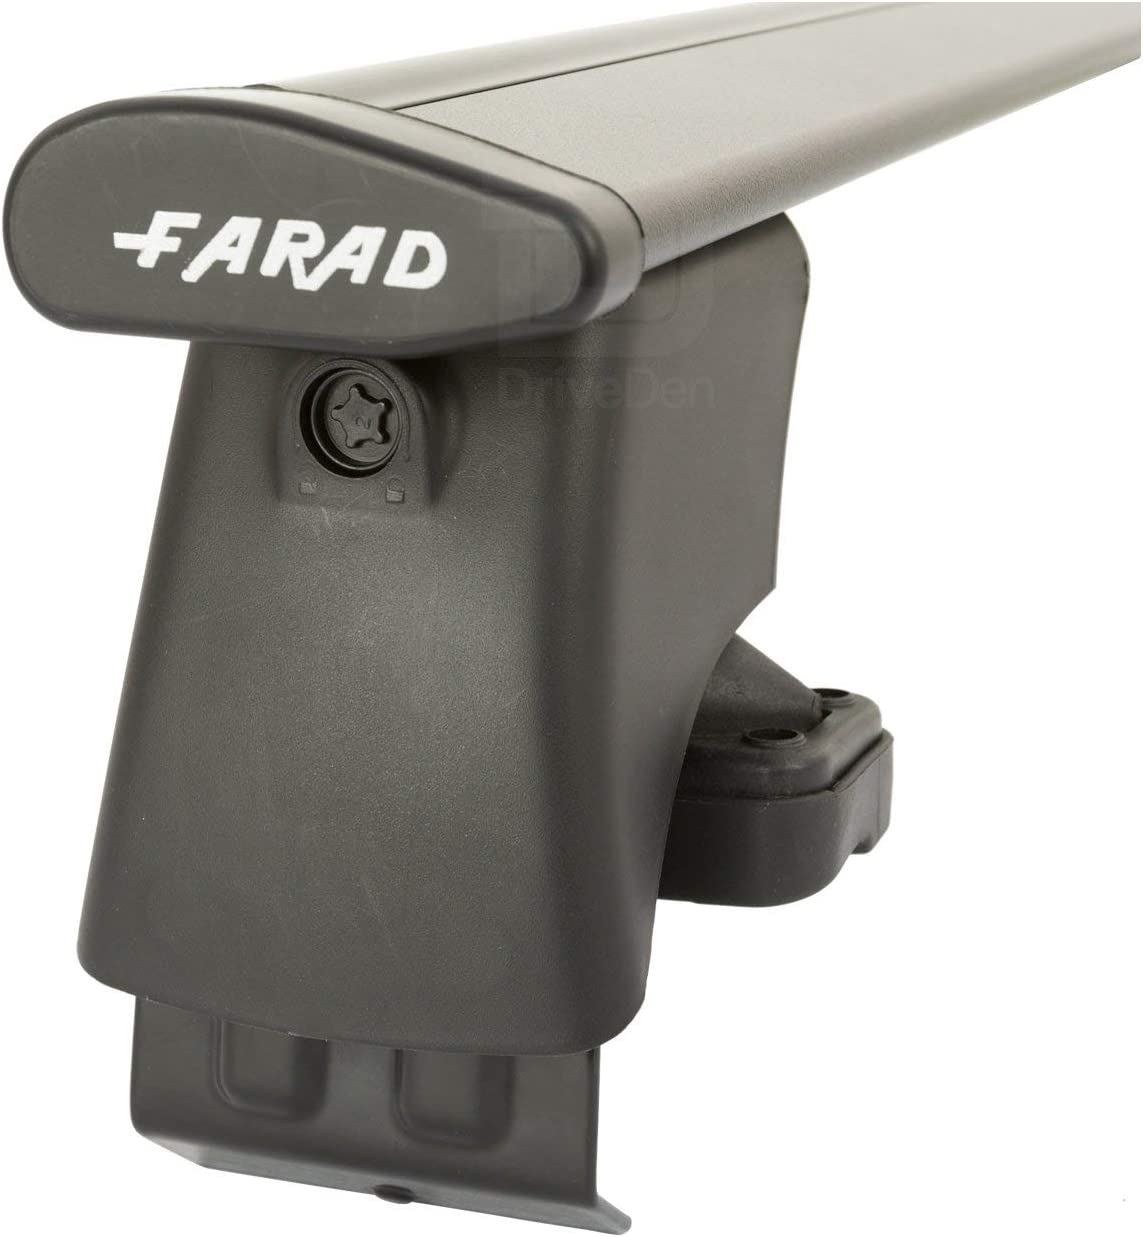 FARAD-Kit H2 per barre portatutto - Seat Ibiza 2002-2007 (senza corrimano)